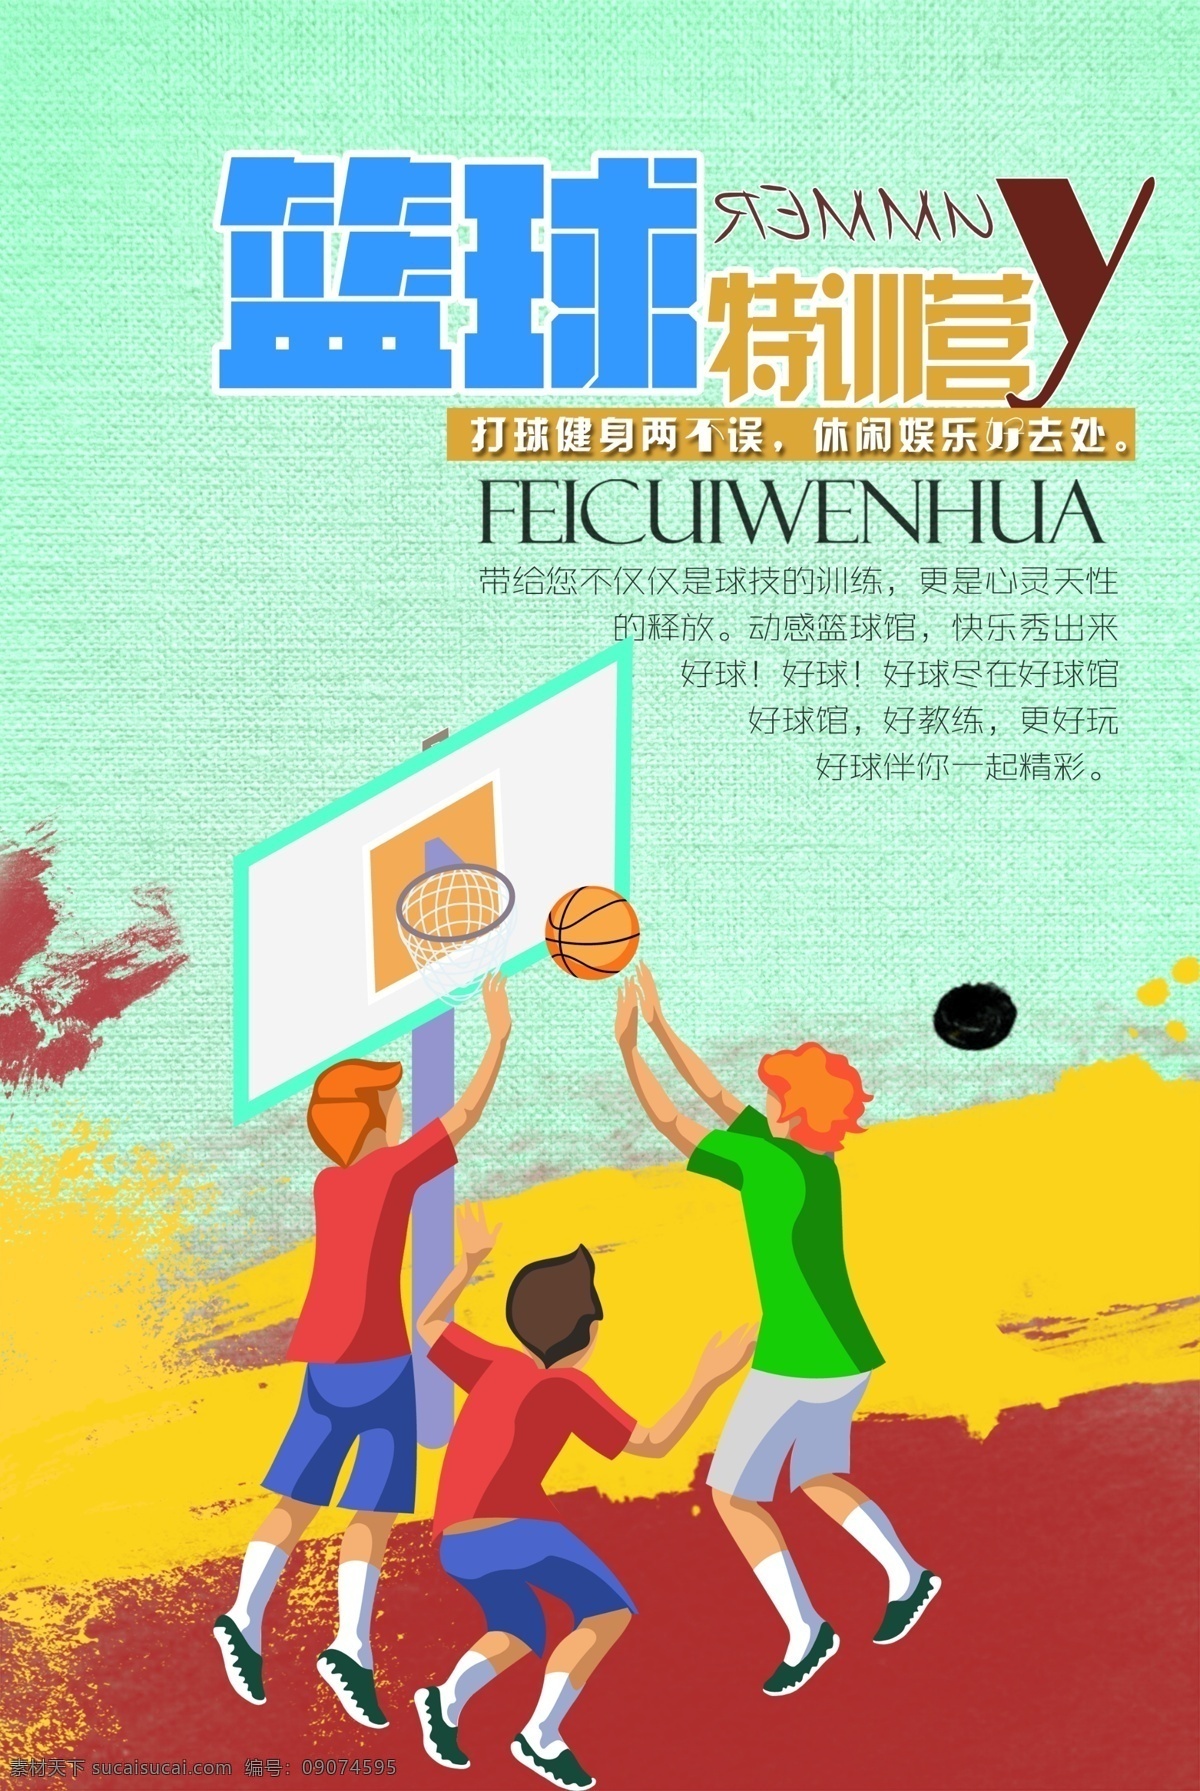 篮球训练营 篮球馆 篮球馆海报 打篮球 打篮球海报 篮球训练馆 篮球特训营 海报